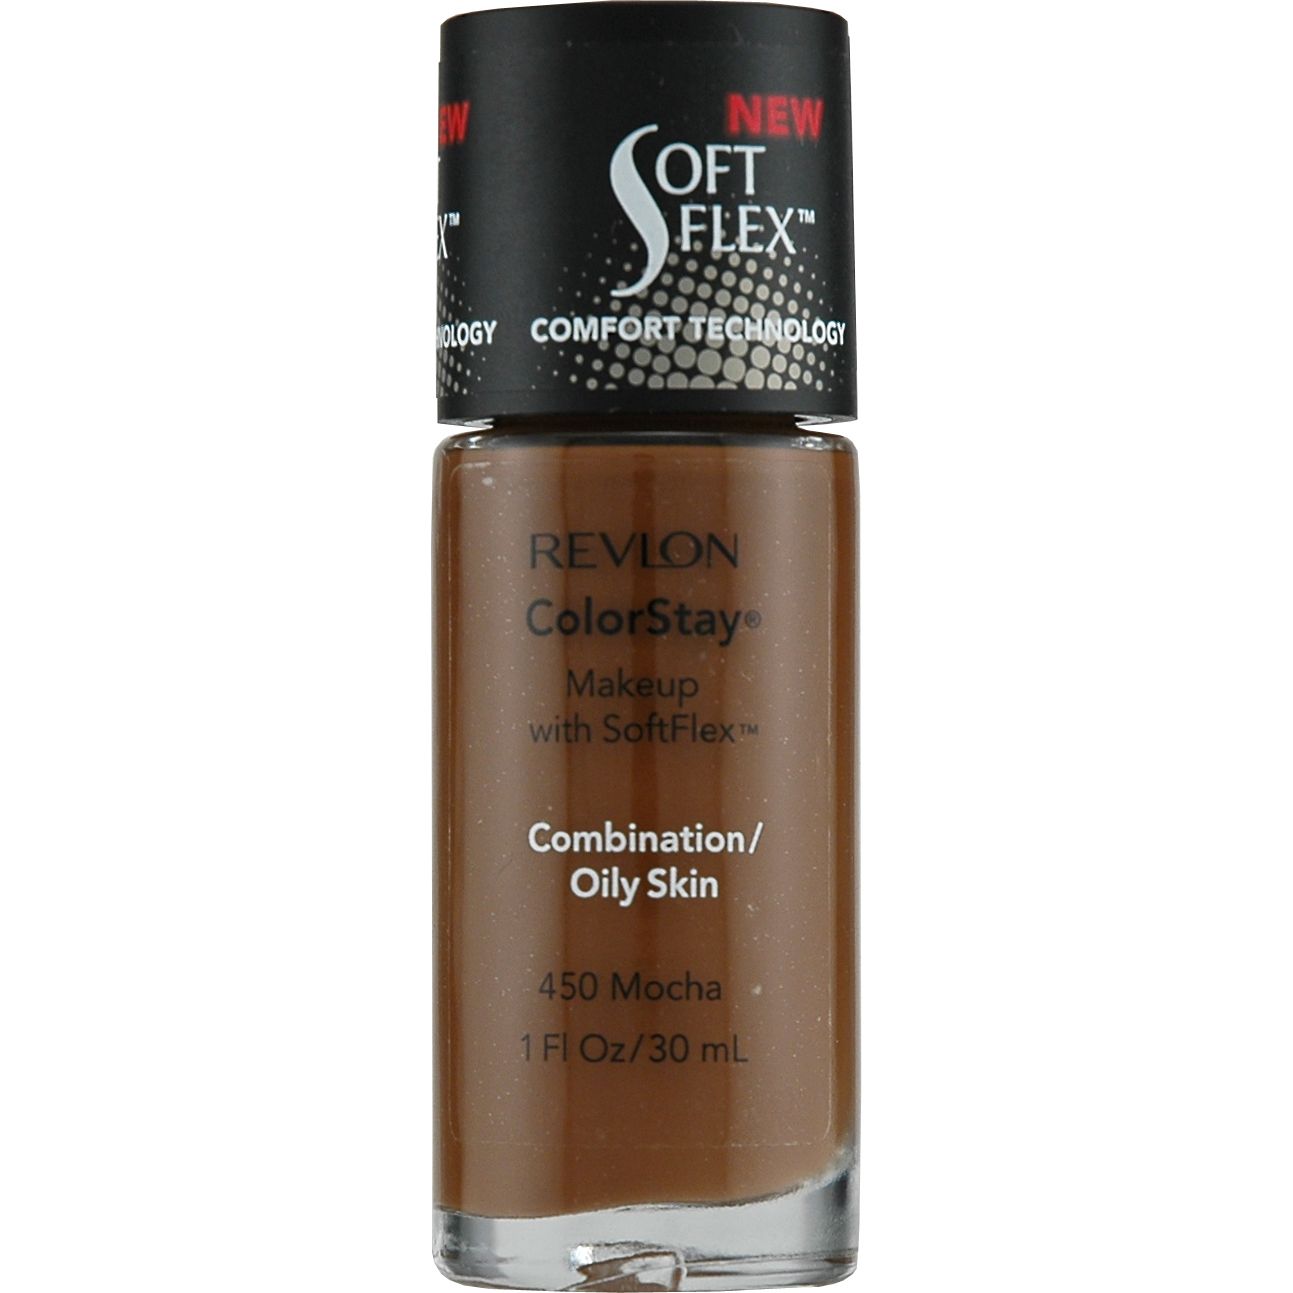 Makeup with SoftFlex, 360 Golden Caramel, 1 fl oz (30 ml)